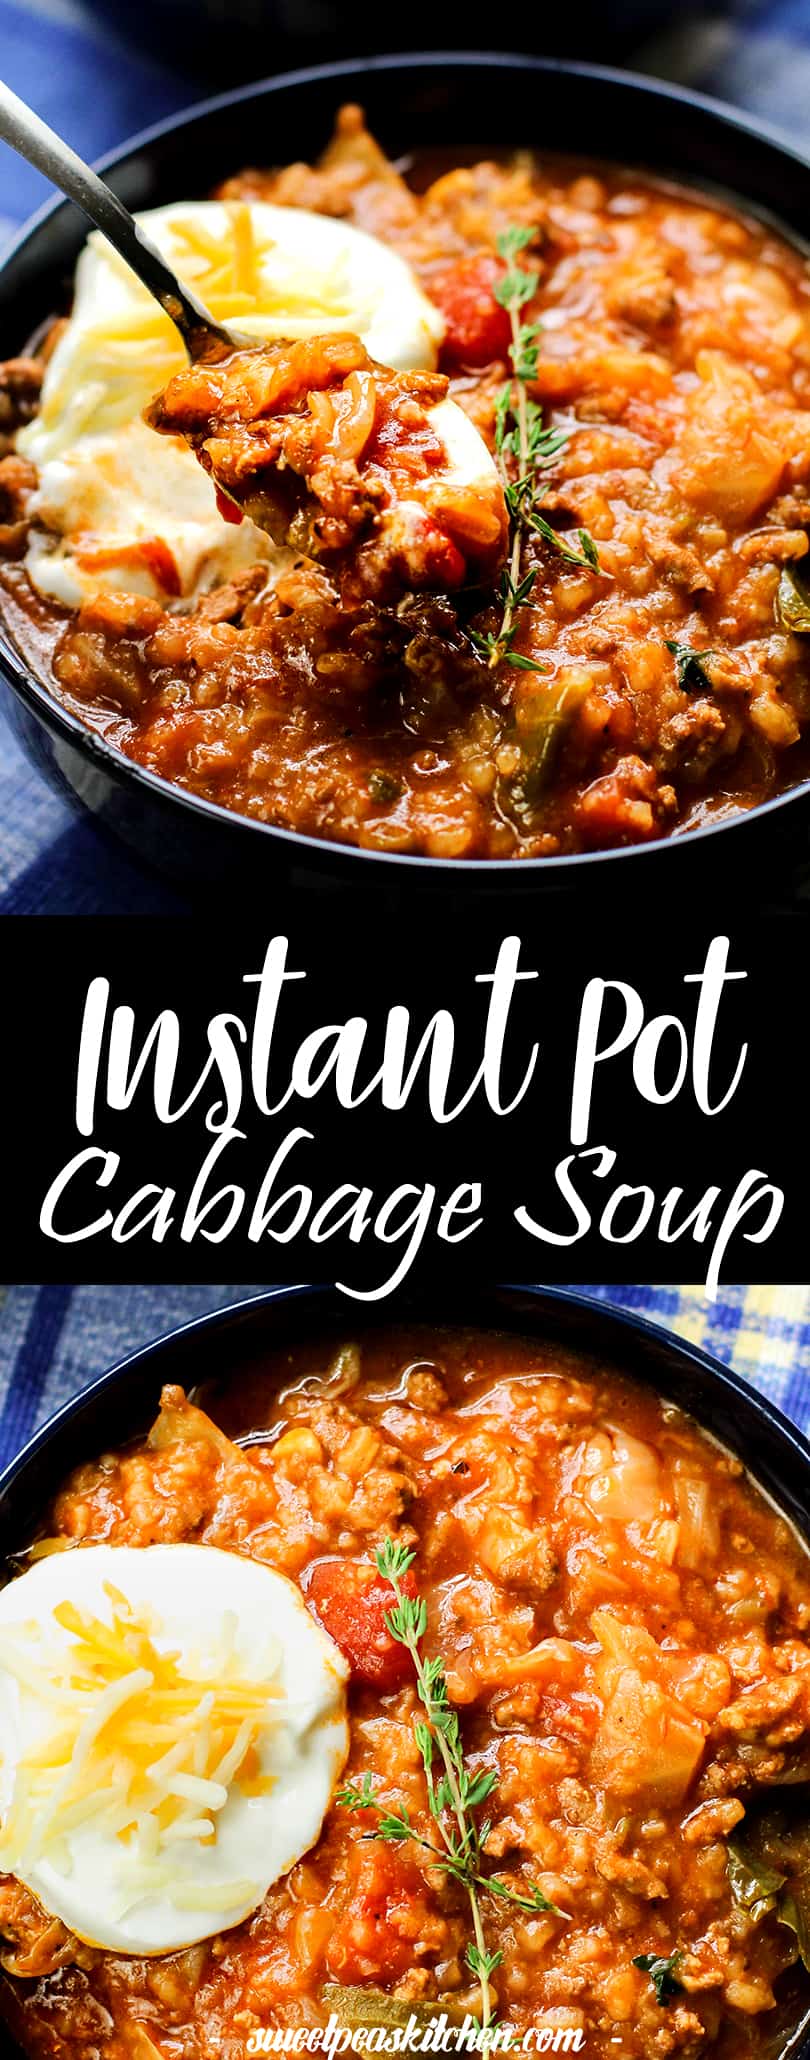 Instant Pot cabbage soup